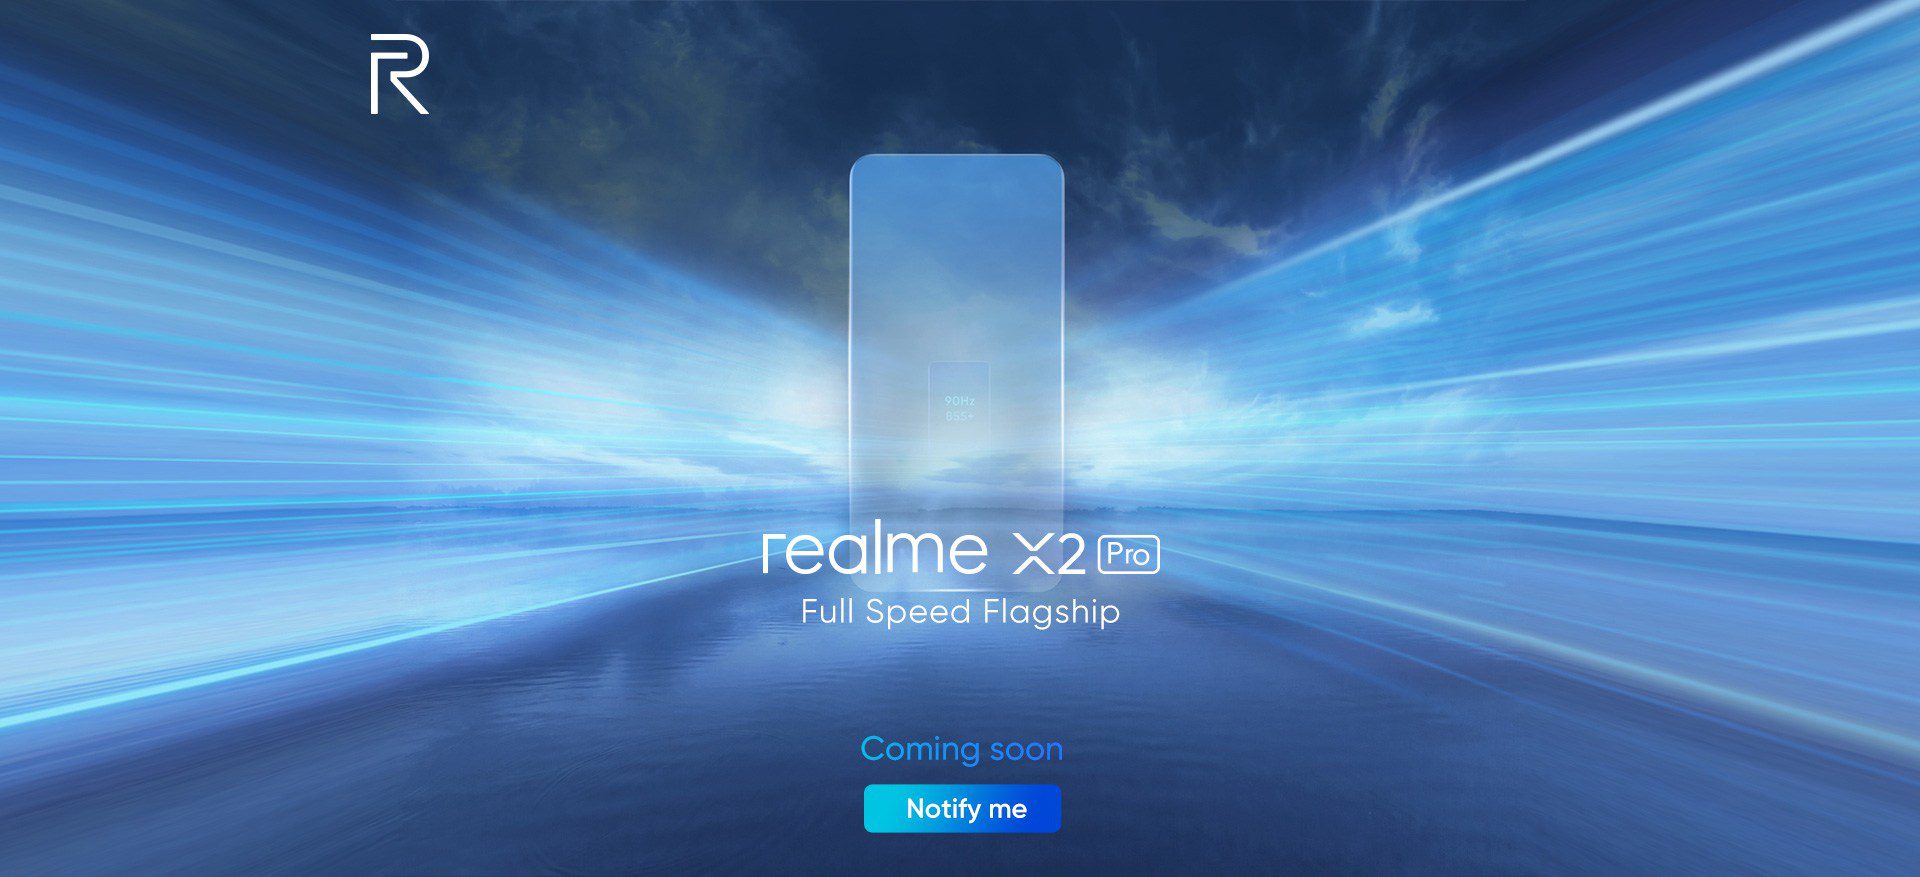 Realme X2 Pro está en el horizonte con SD855 Plus, pantalla de 90Hz, cámara de 64MP y zoom híbrido de 20x